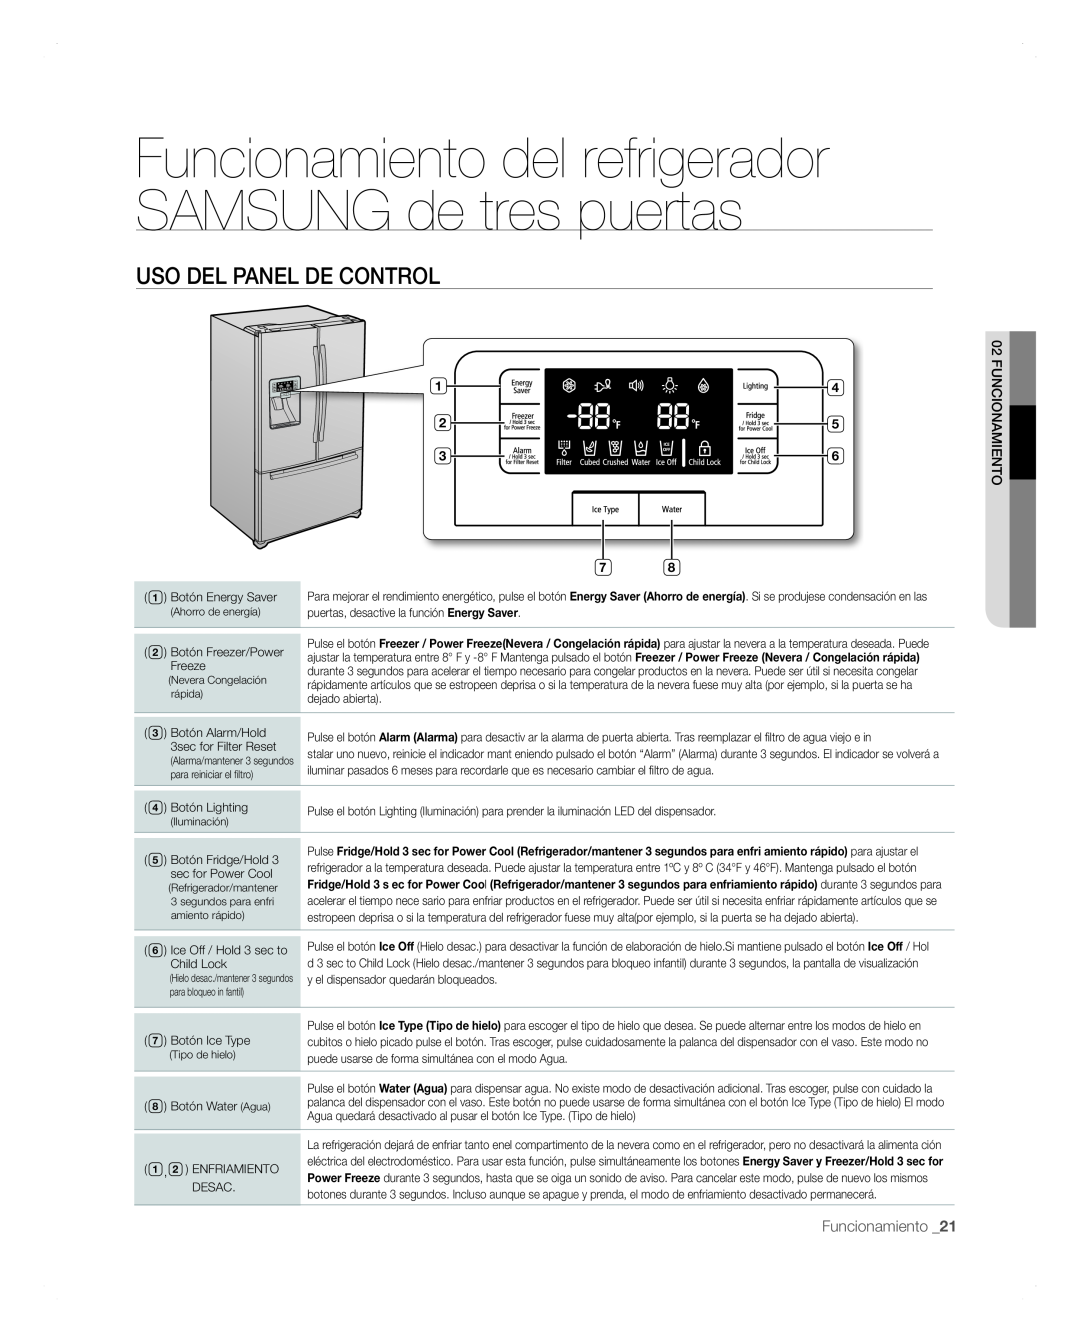 Samsung RFG297AARS Funcionamiento del refrigerador SAMSUNG de tres puertas, Uso Del Panel De Control, Enfriamiento 